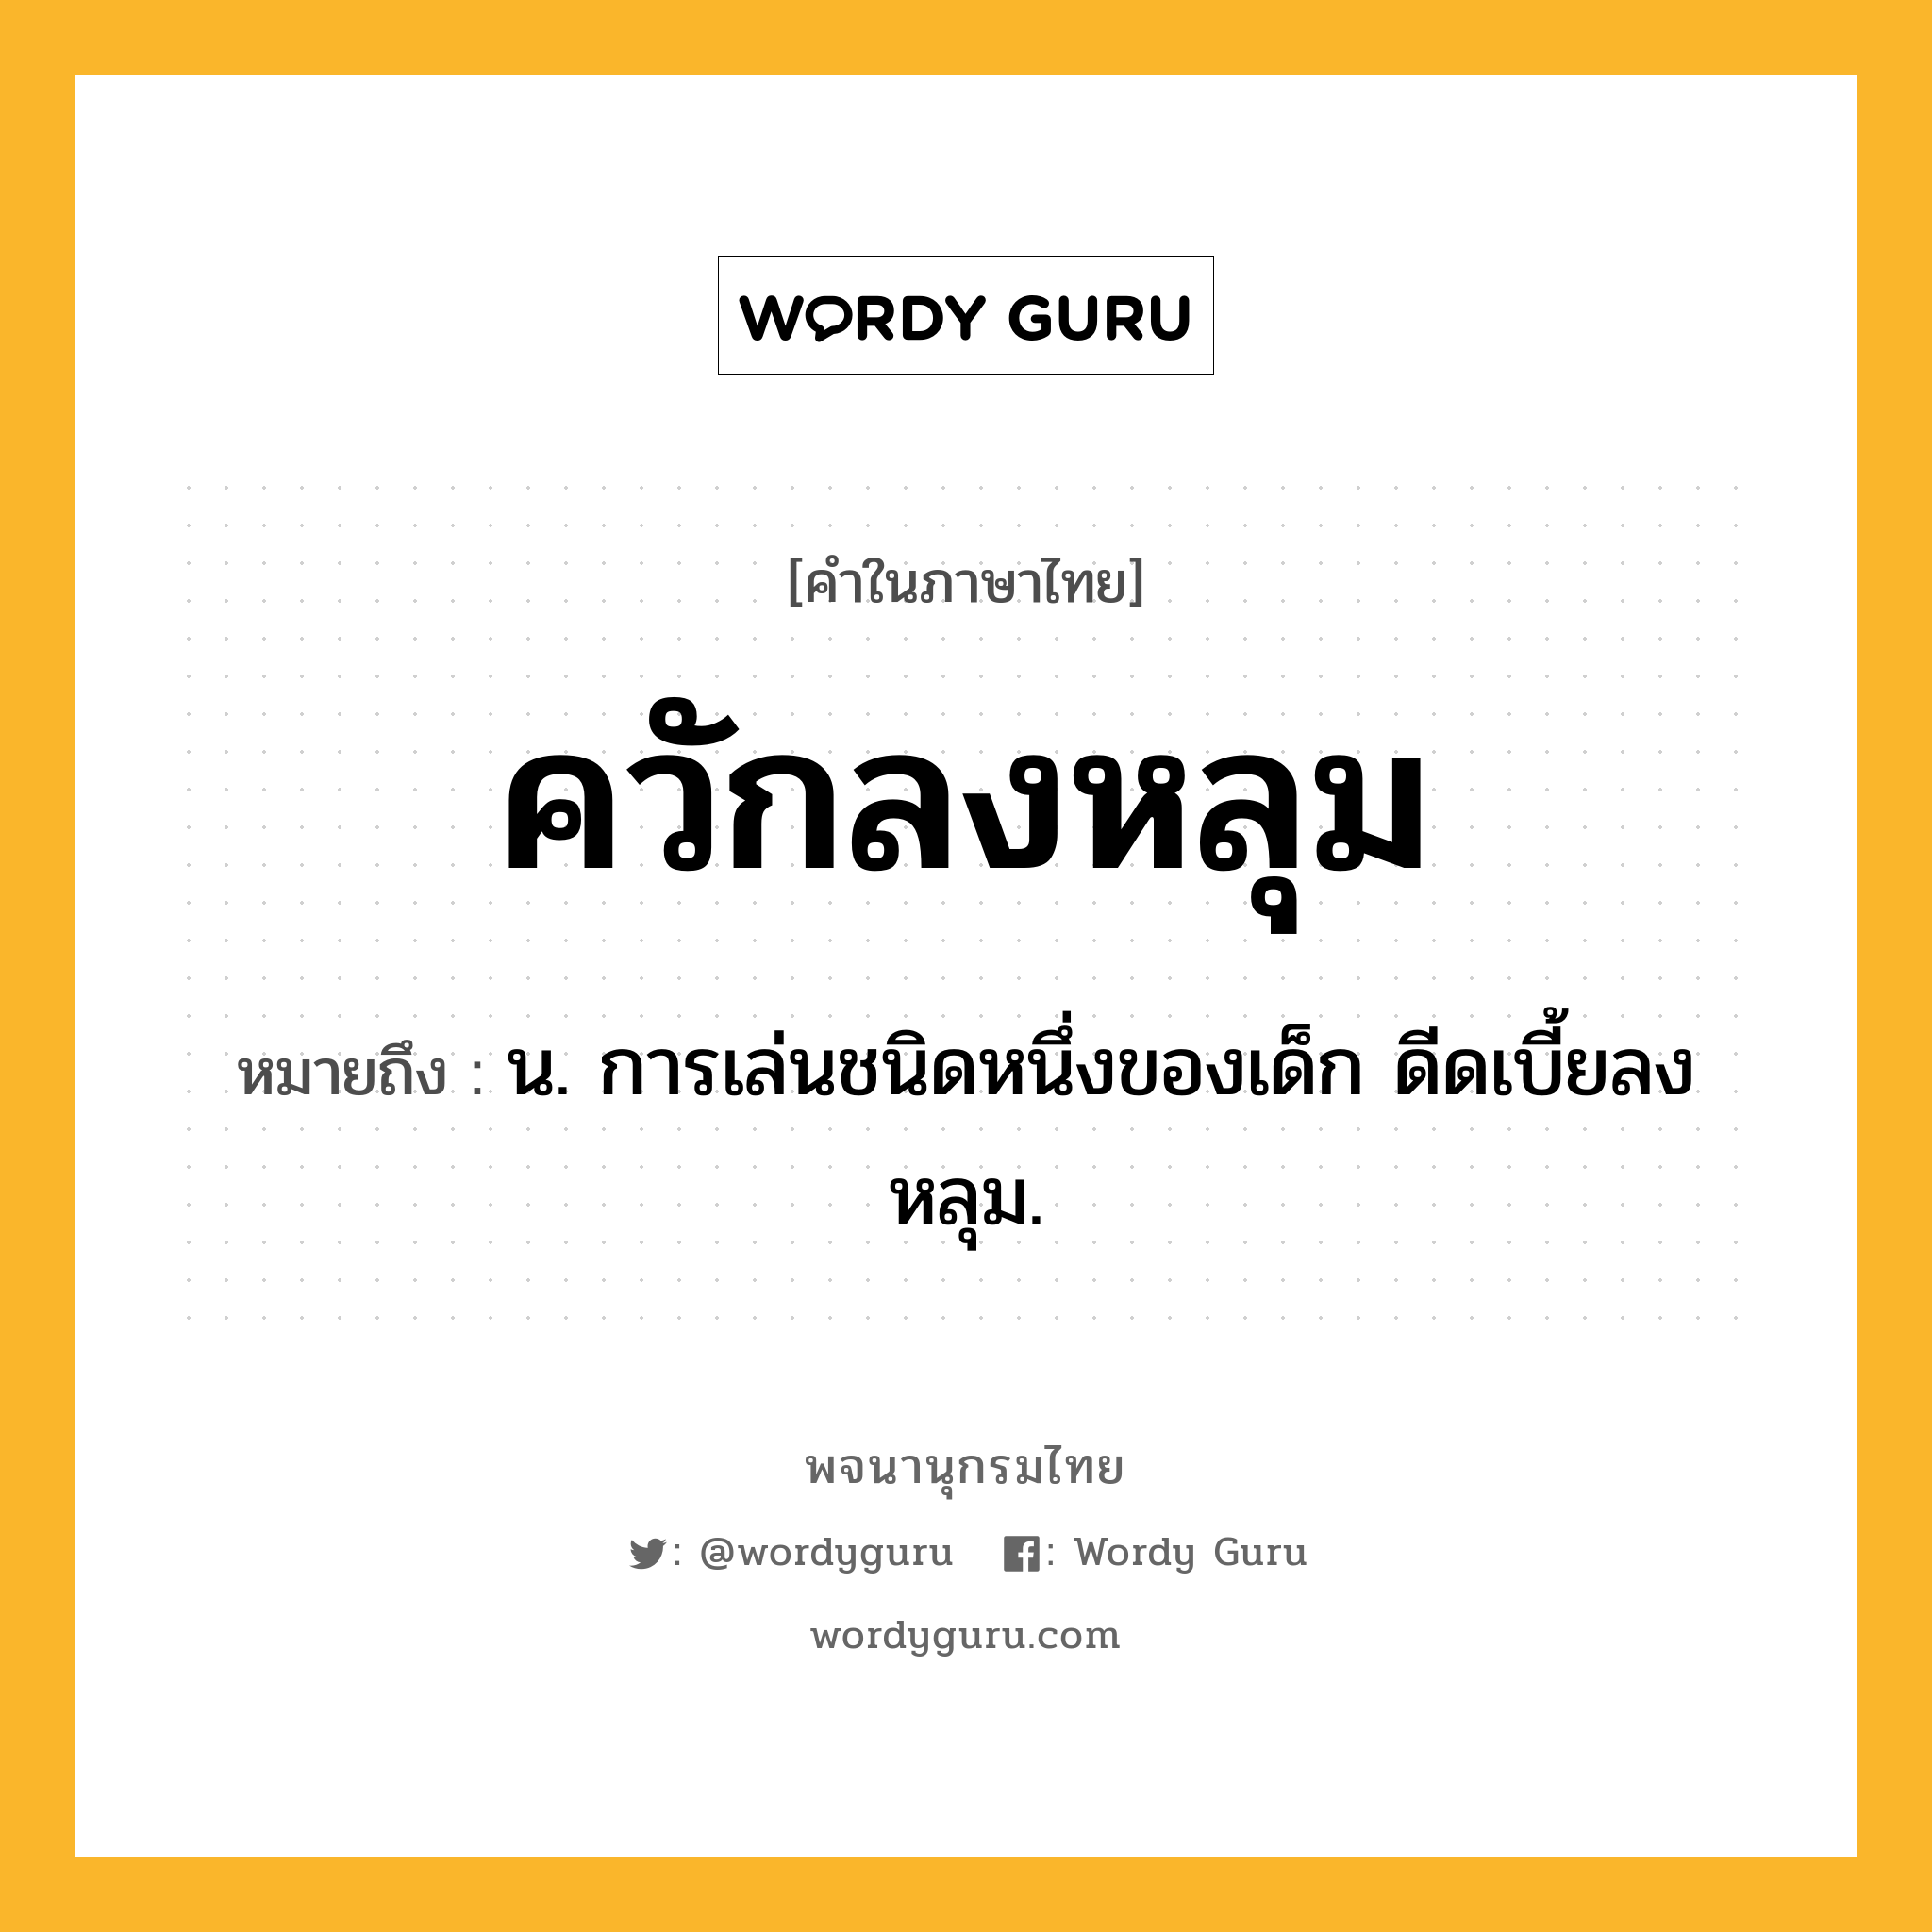 ควักลงหลุม หมายถึงอะไร?, คำในภาษาไทย ควักลงหลุม หมายถึง น. การเล่นชนิดหนึ่งของเด็ก ดีดเบี้ยลงหลุม.